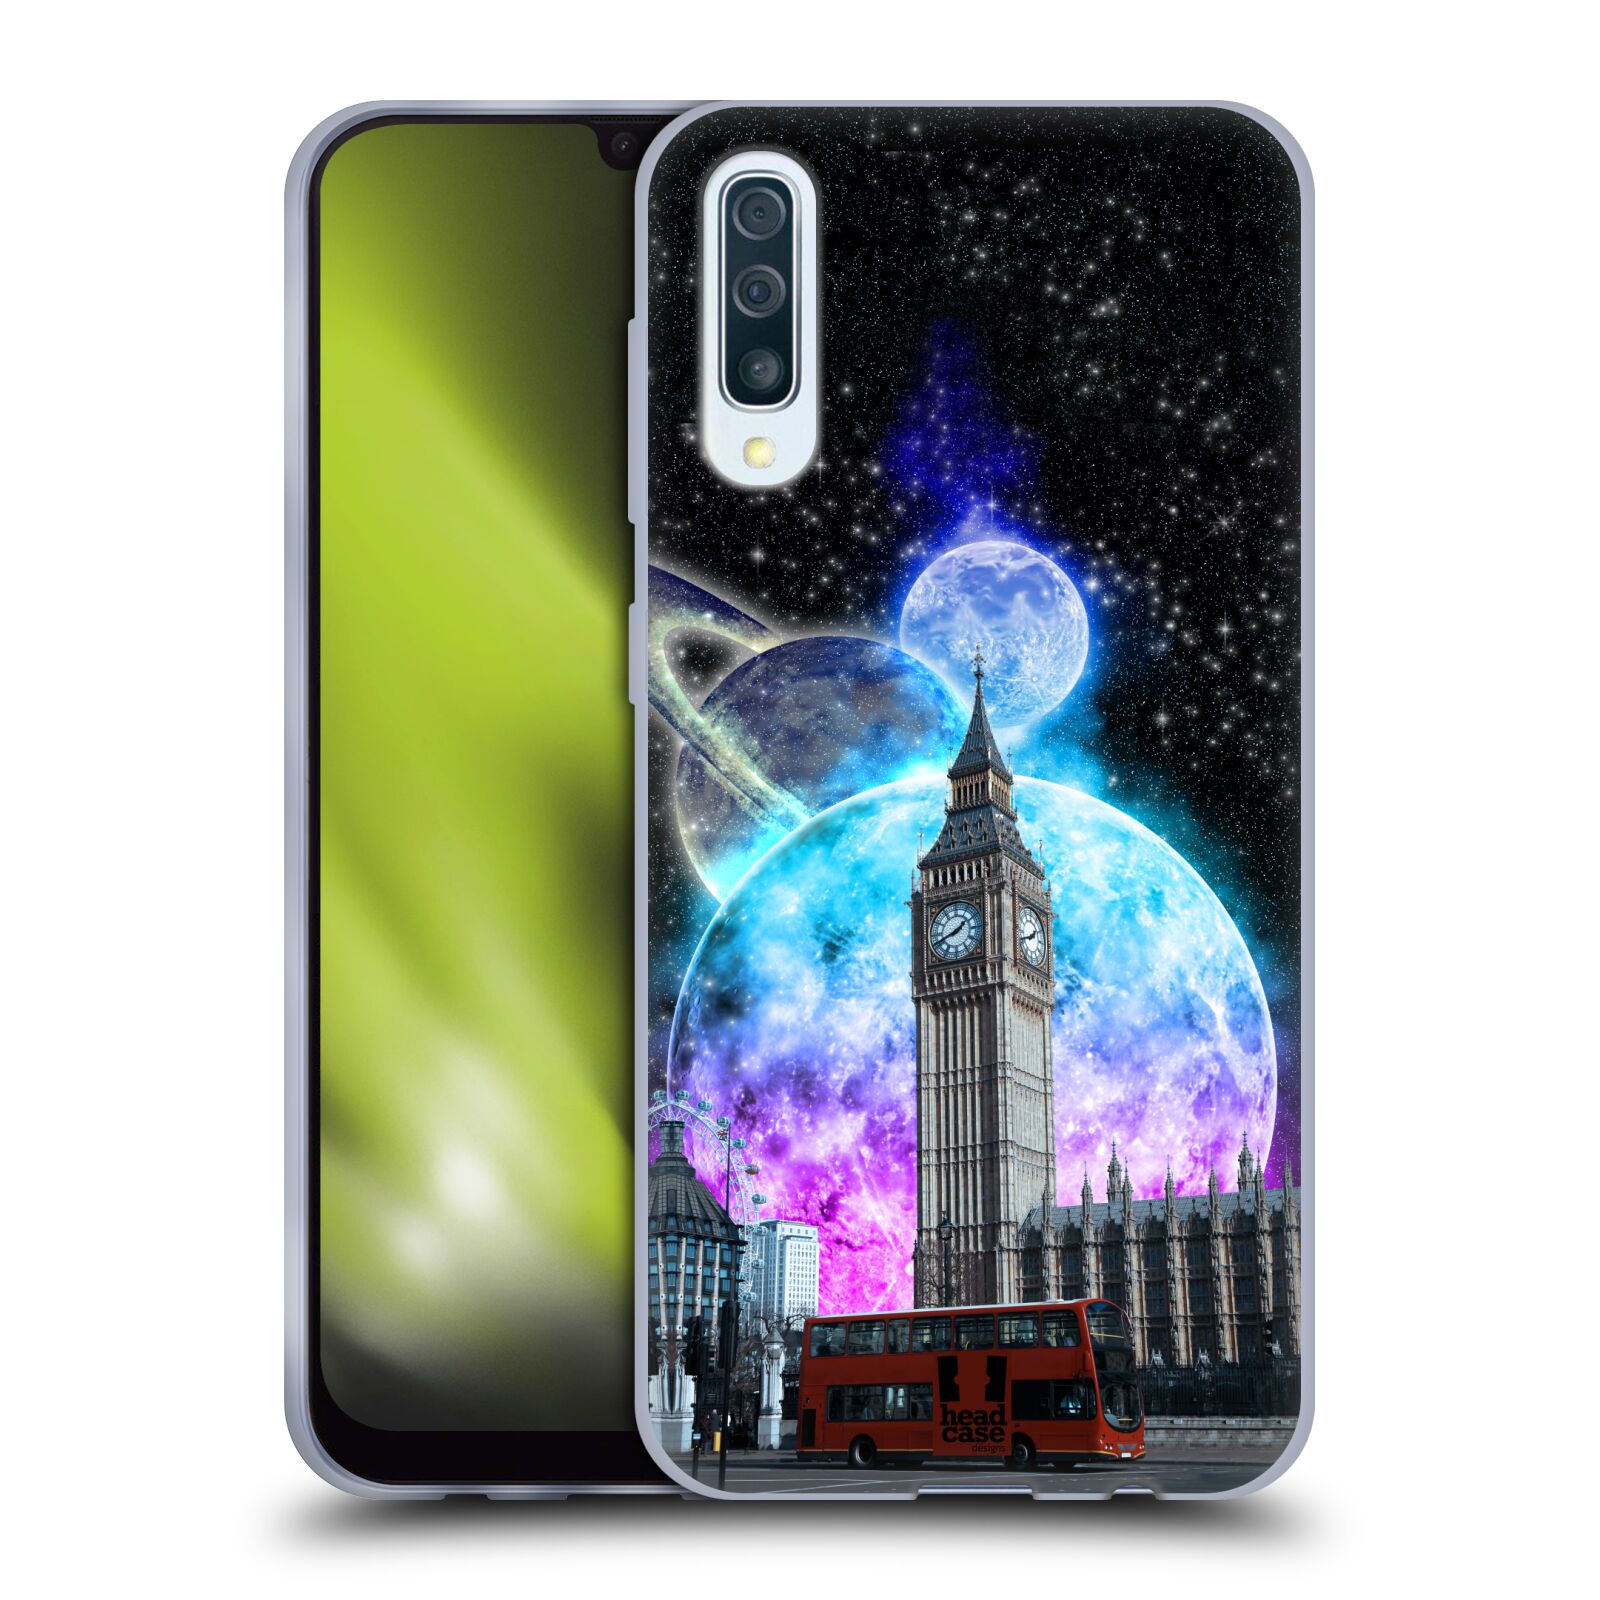 Silikonové pouzdro na mobil Samsung Galaxy A50 / A30s - Head Case - Měsíční Londýn (Silikonový kryt, obal, pouzdro na mobilní telefon Samsung Galaxy A50 / A30s z roku 2019 s motivem Měsíční Londýn)